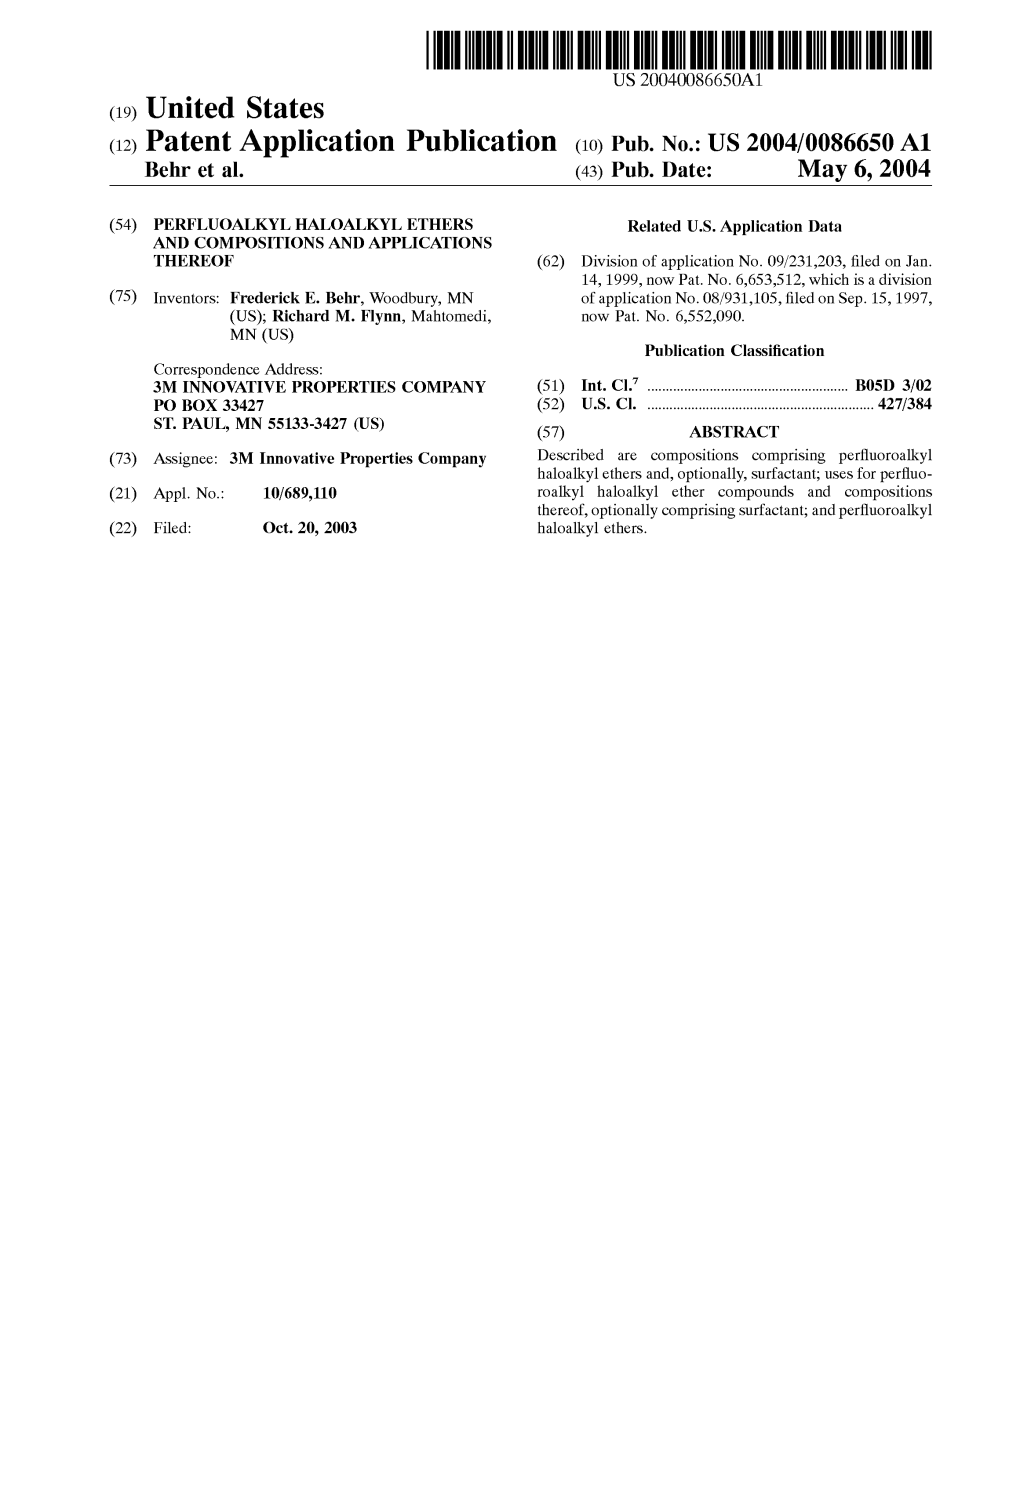 (12) Patent Application Publication (10) Pub. No.: US 2004/0086650 A1 Behr Et Al